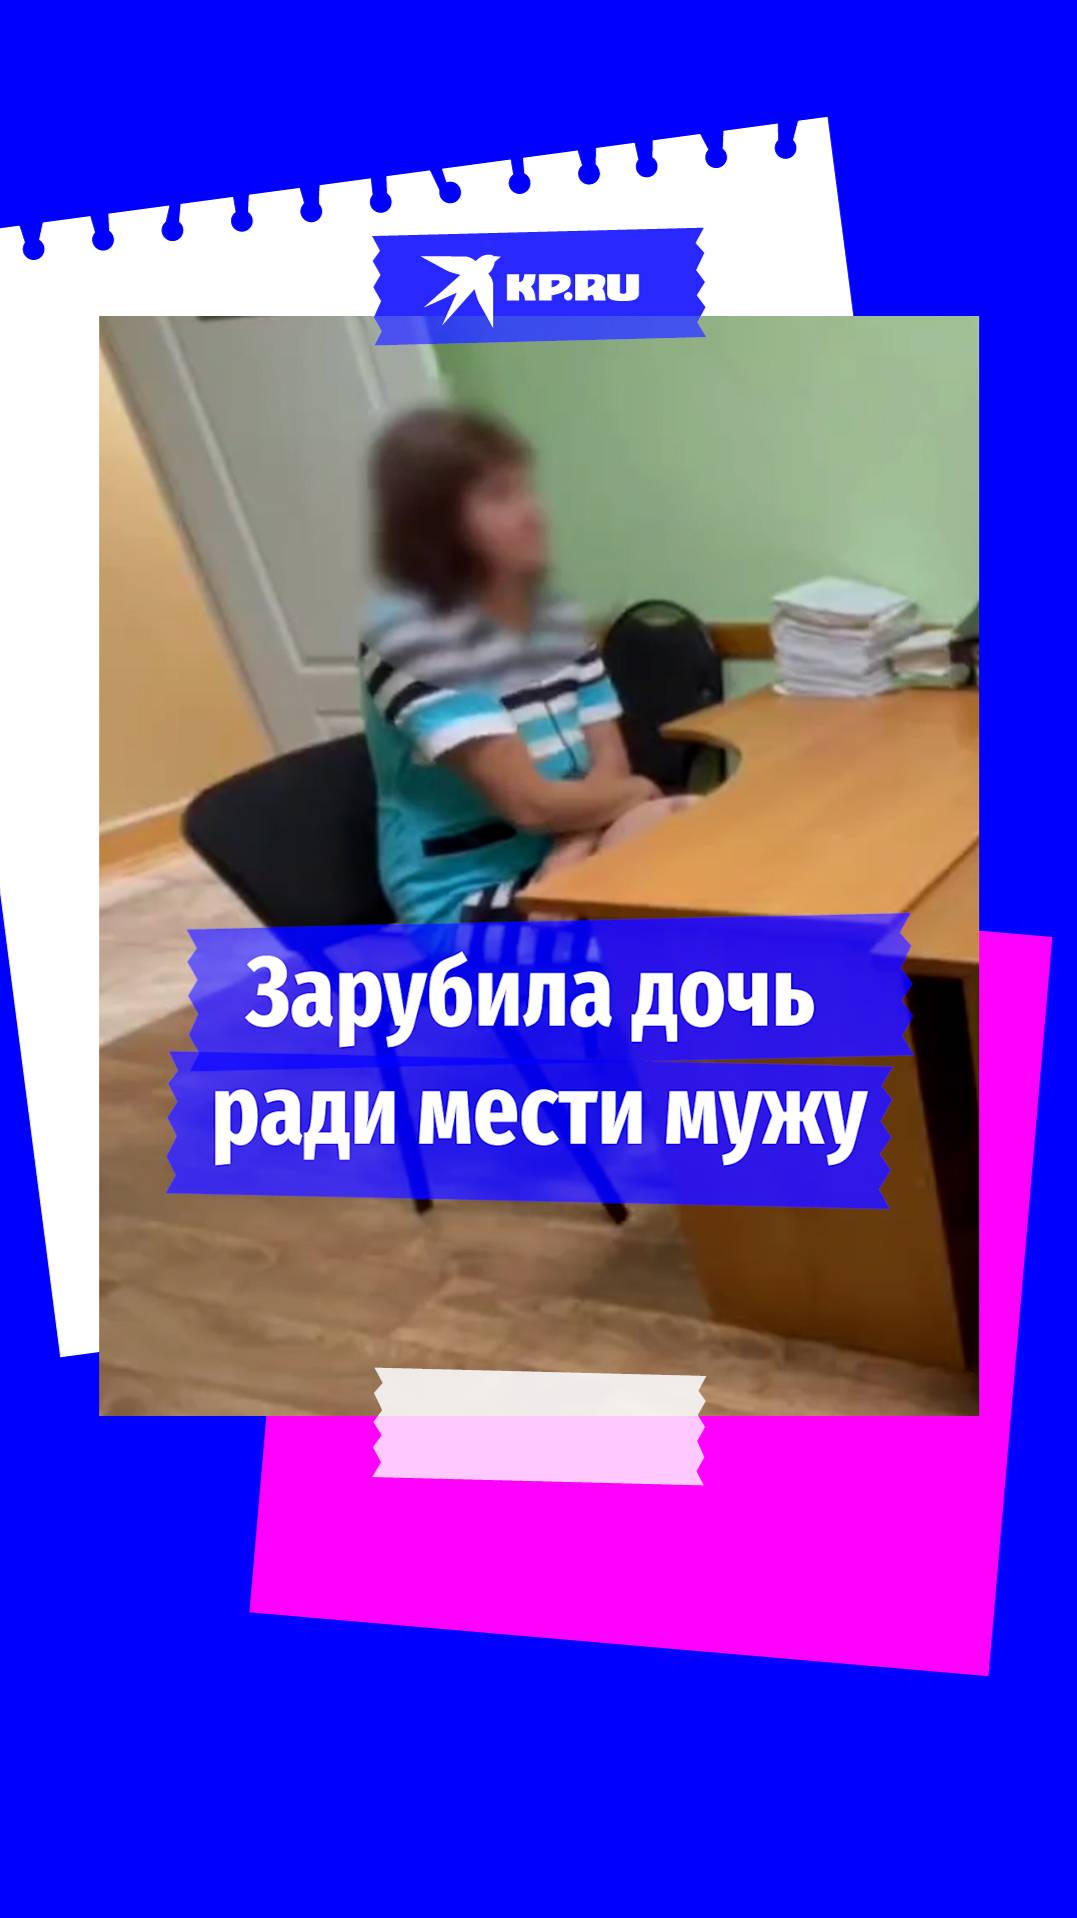 В Красноярском крае пьяная женщина зарубила дочь, чтобы отомстить мужу за измену